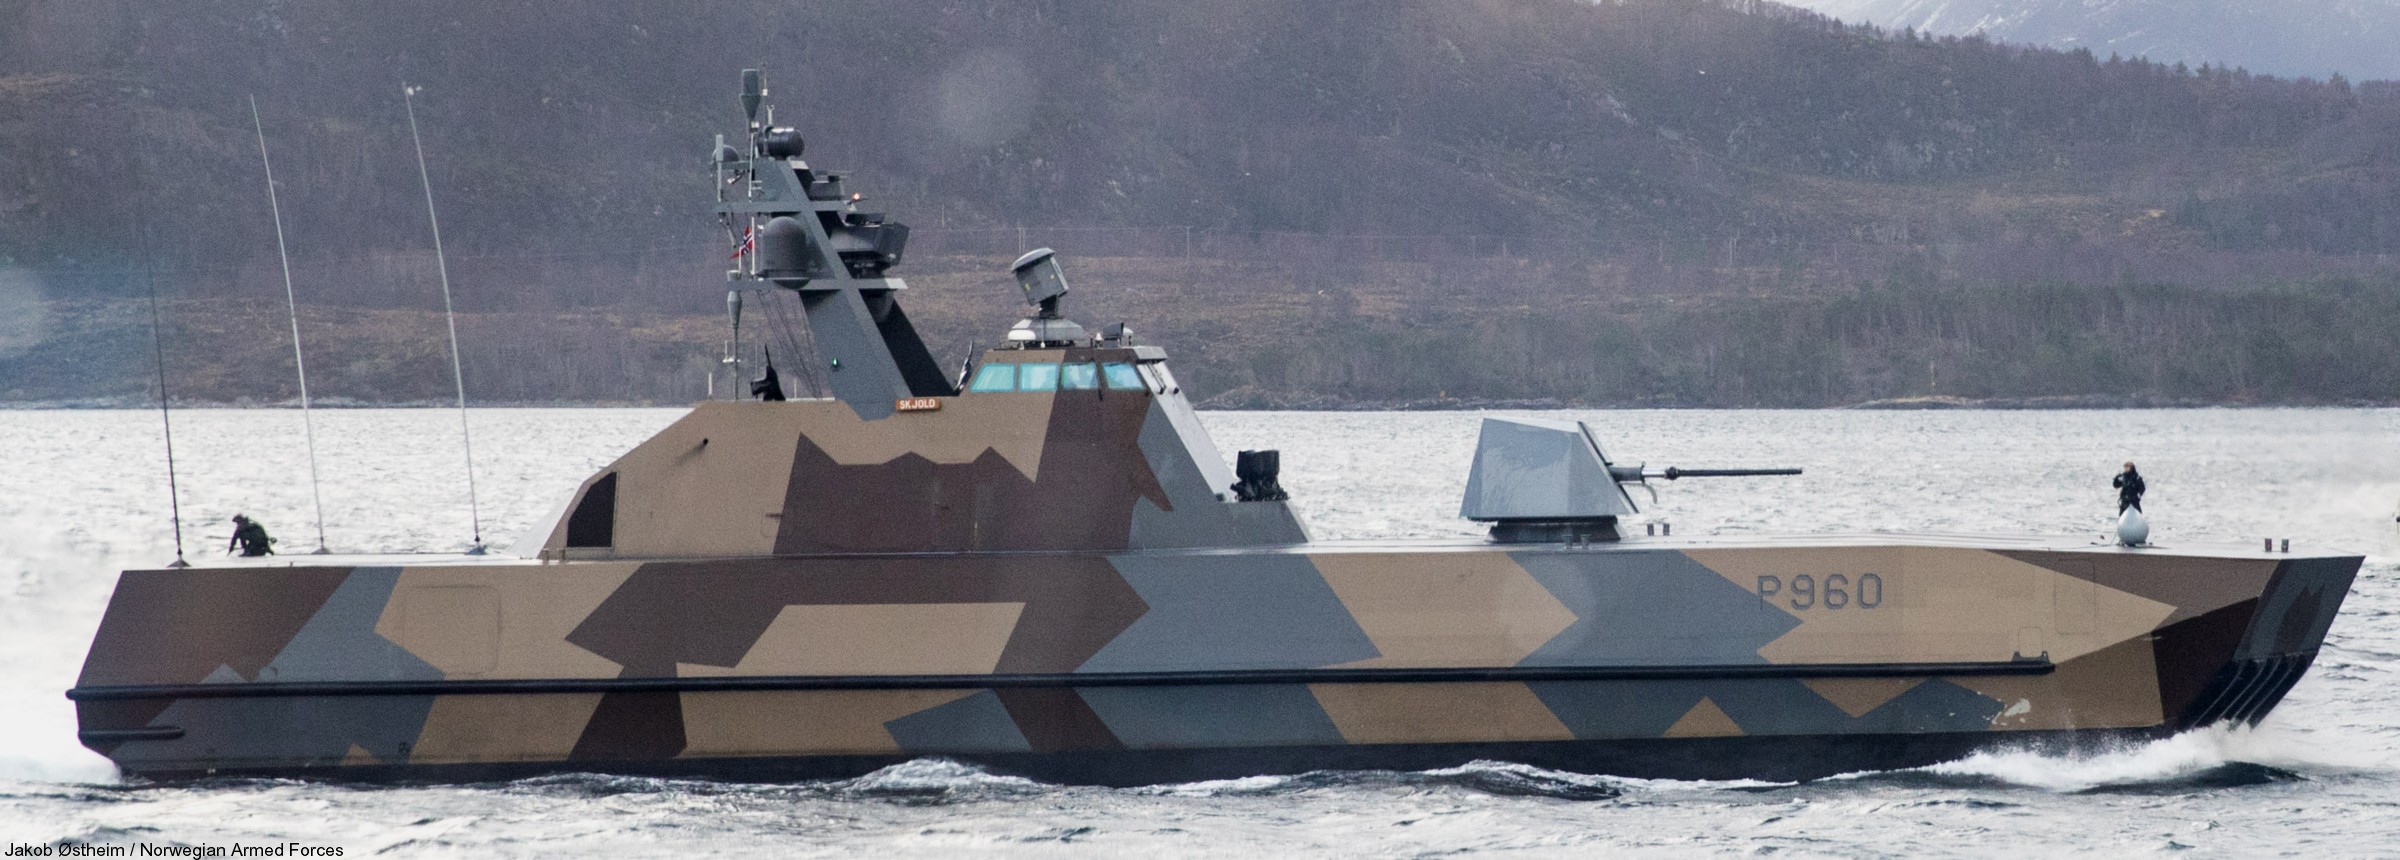 p-960 skjold hnoms knm corvette royal norwegian navy sjoforsvaret 04